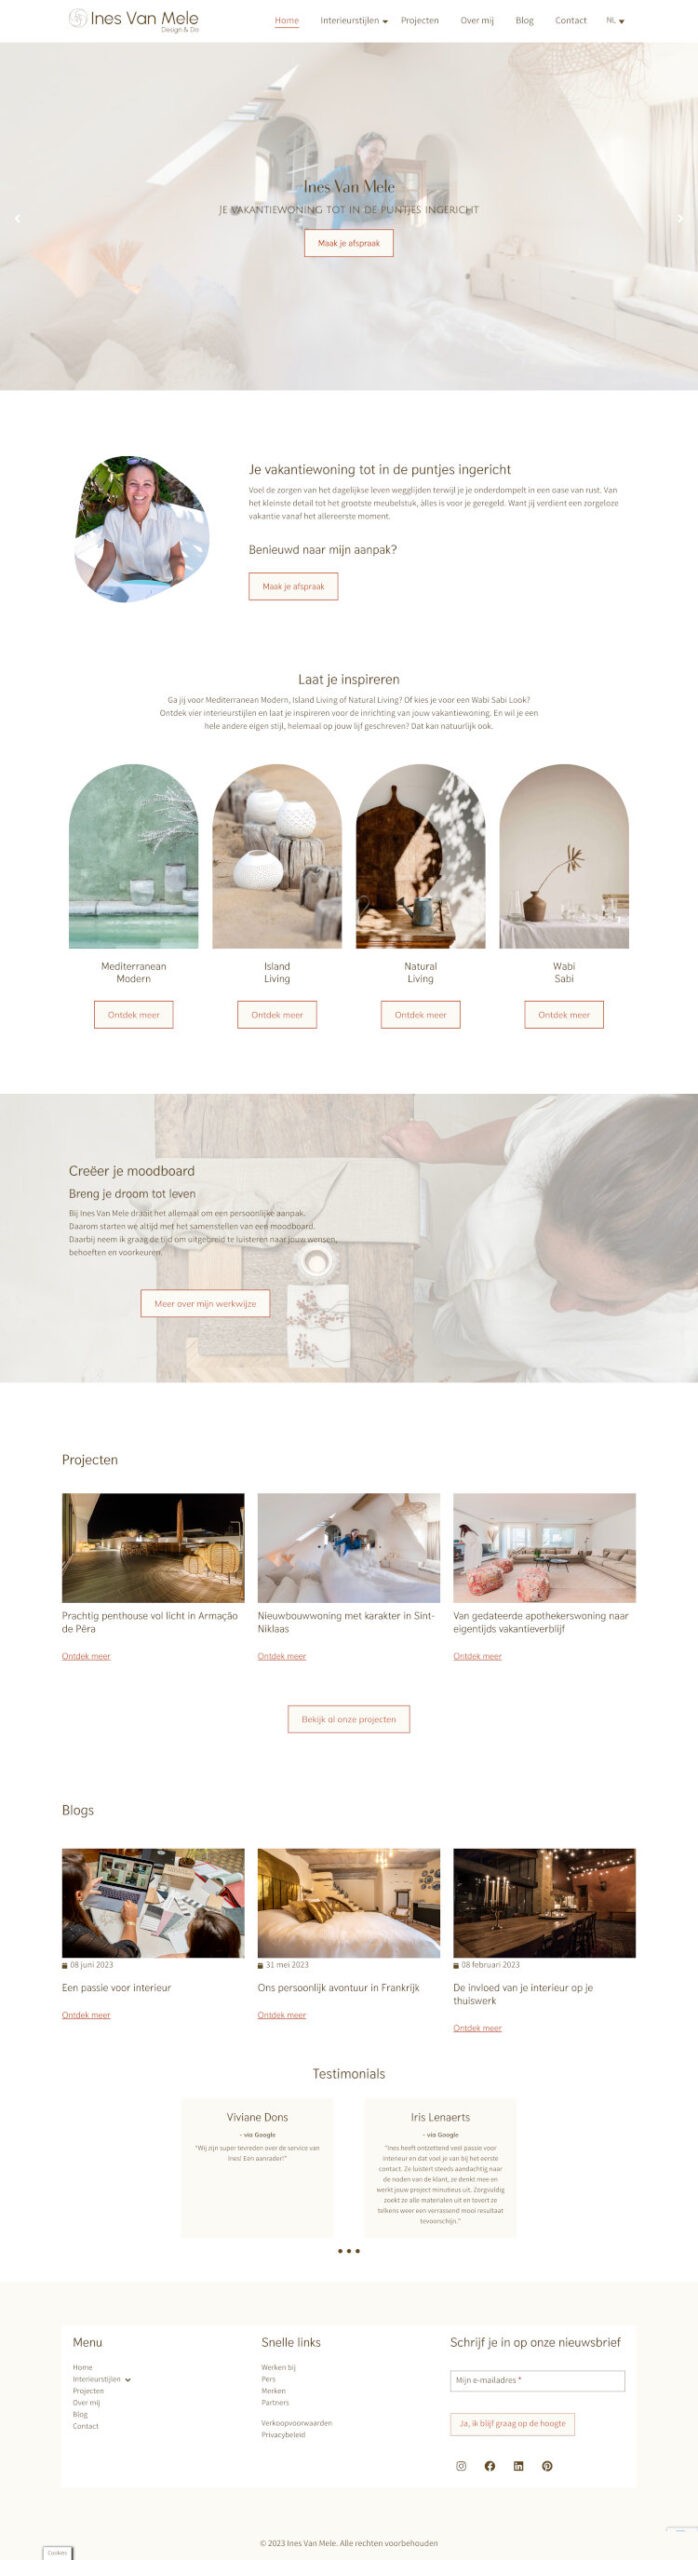 Homepage van de website van Interieurinrichtster Ines Van Mele